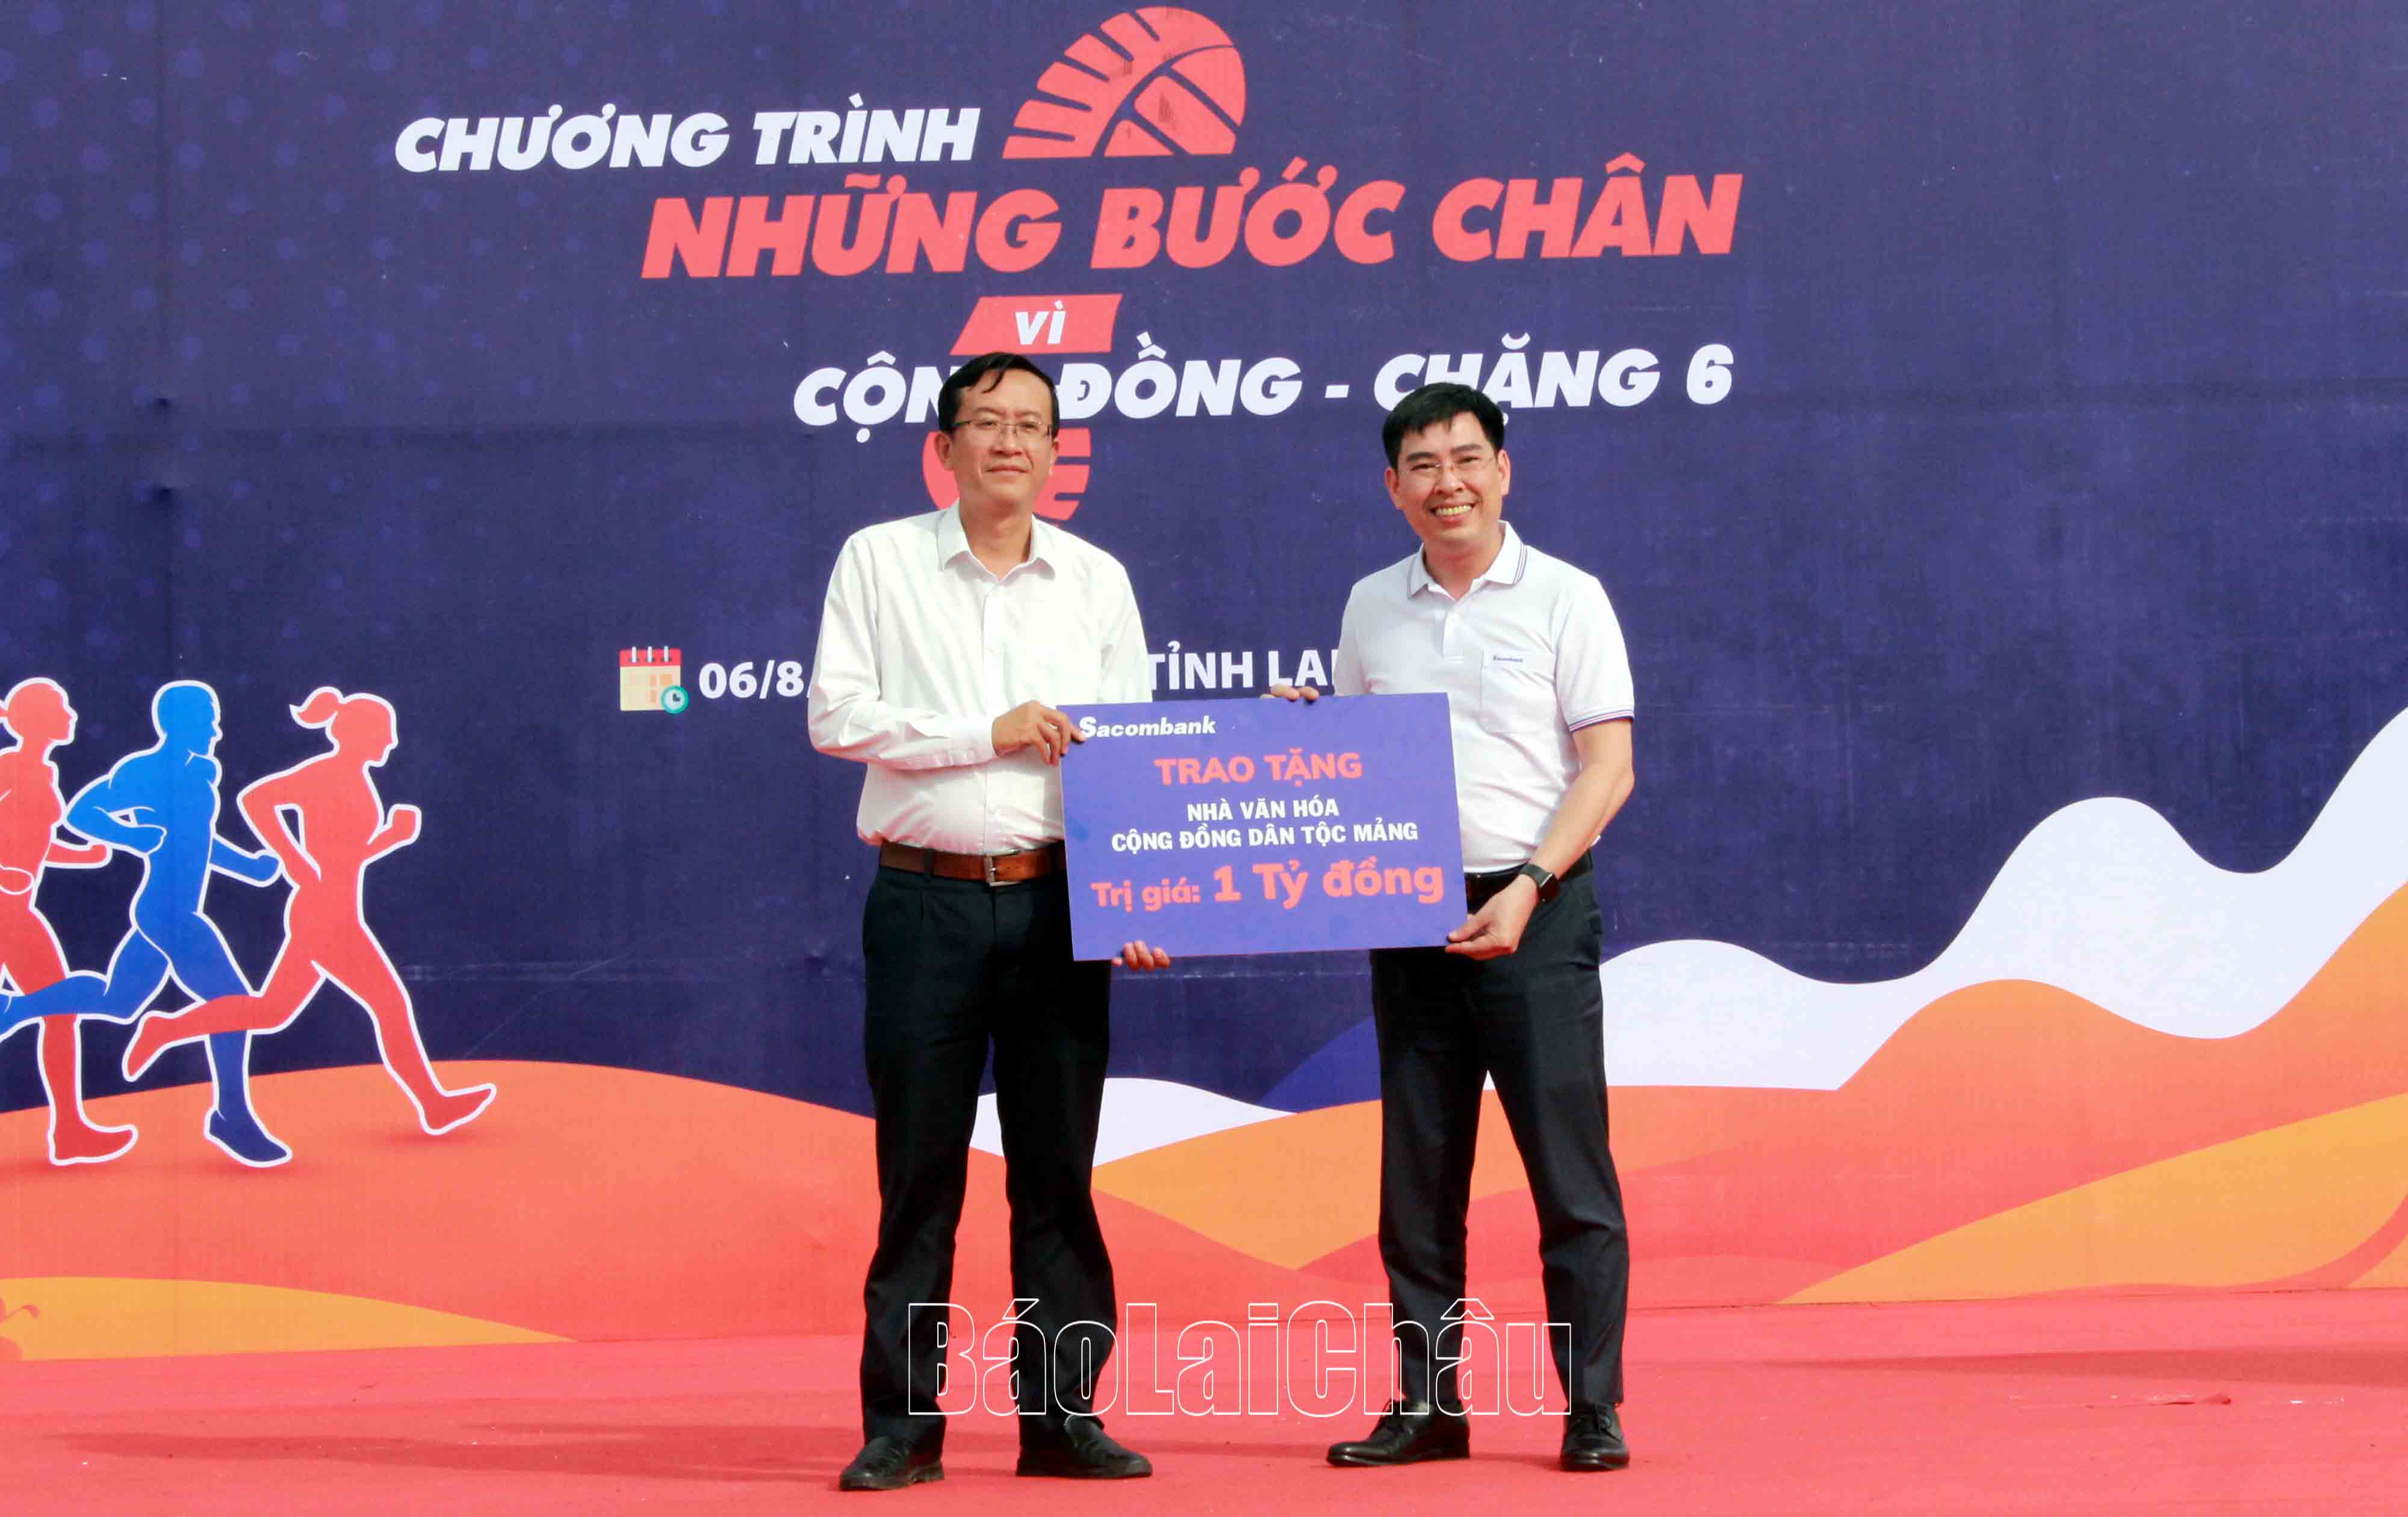 Đại diện lãnh đạo huyện Nậm Nhùn nhận 1 tỷ đồng xây dựng Nhà văn hóa  cộng đồng cho dân tộc Mảng.